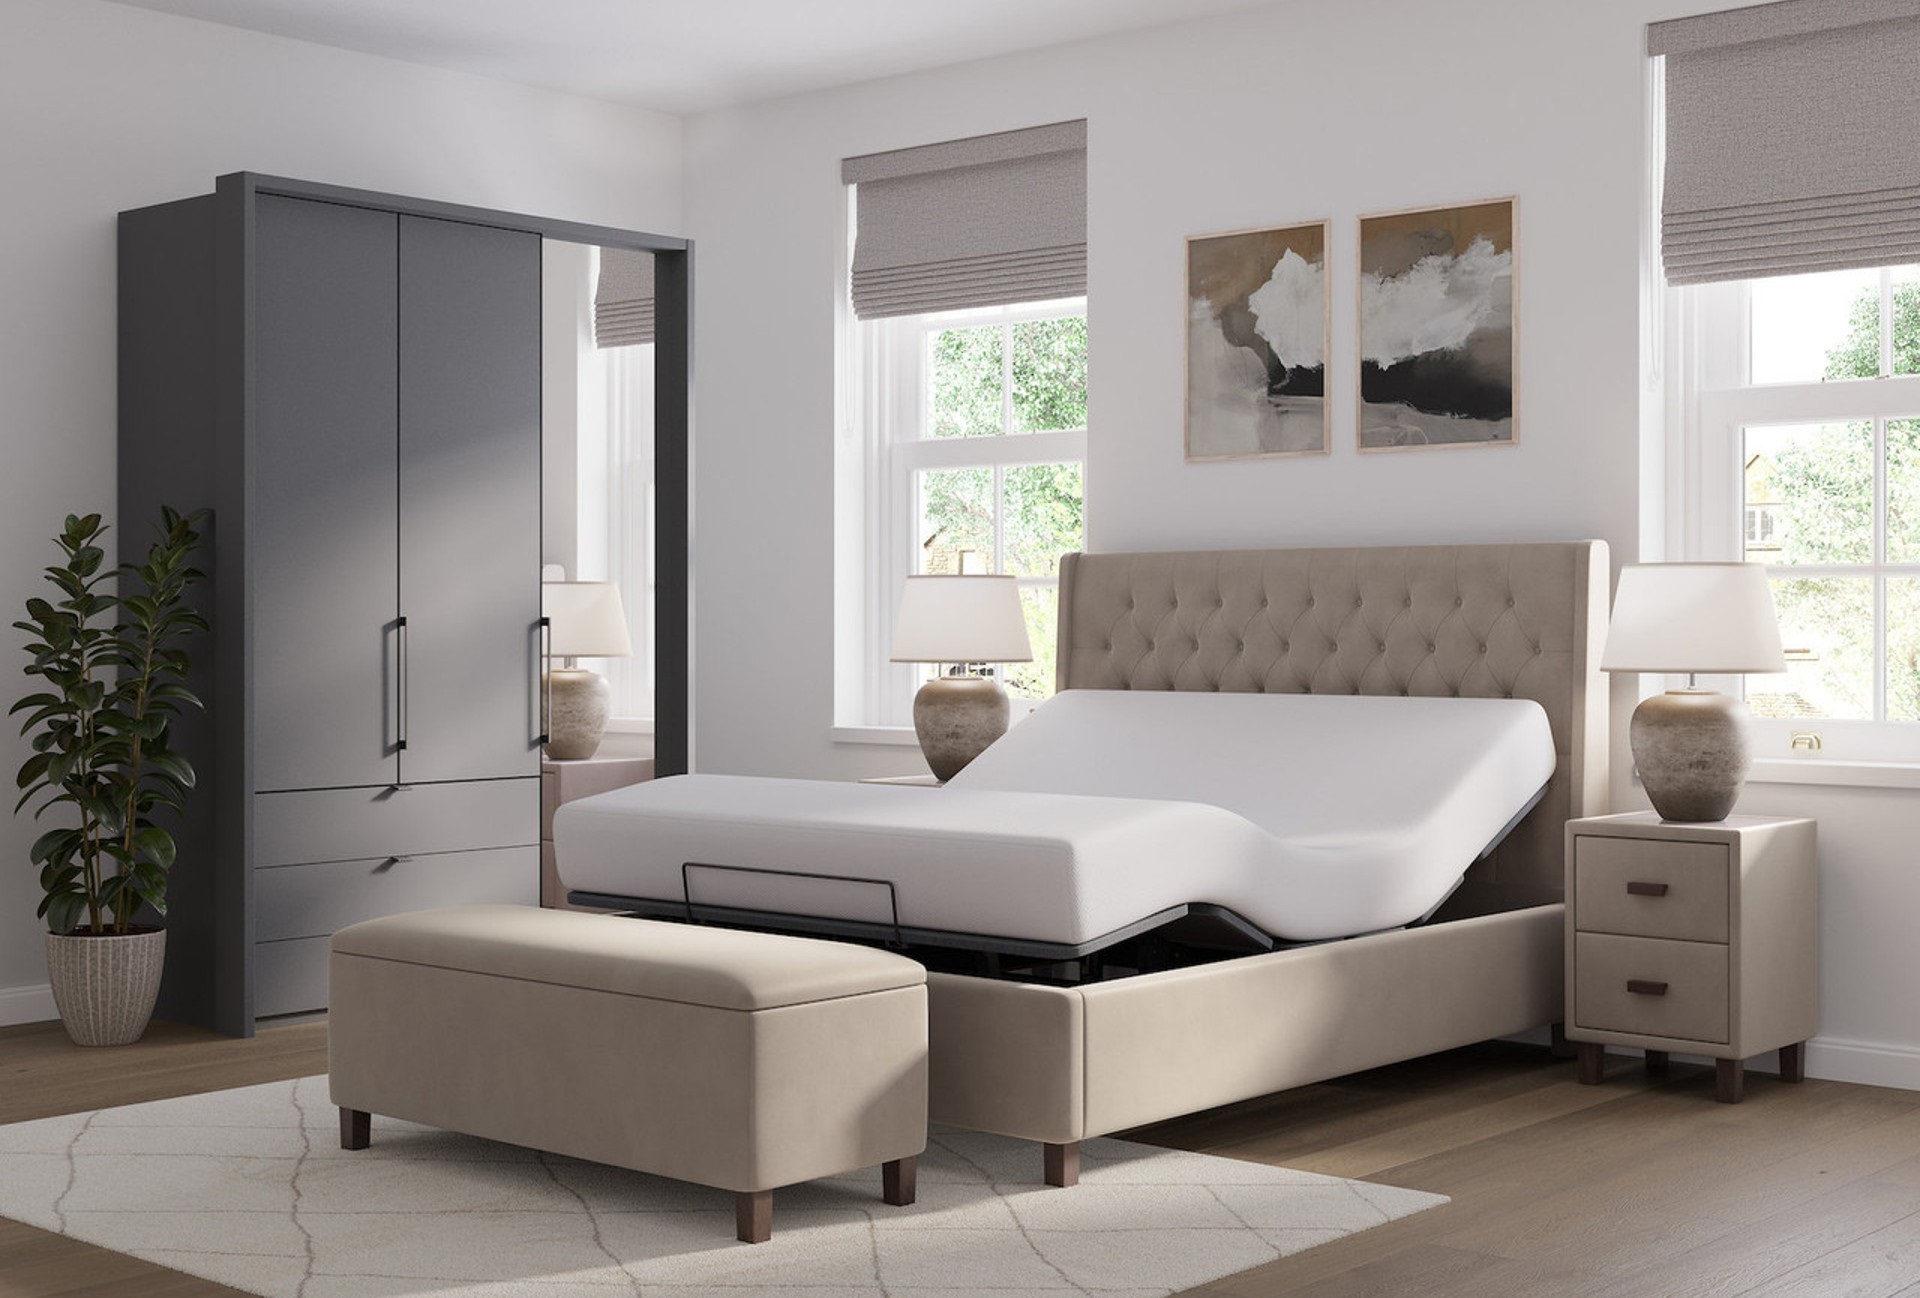 Snooze Star adjustable bed frame in opulence mink